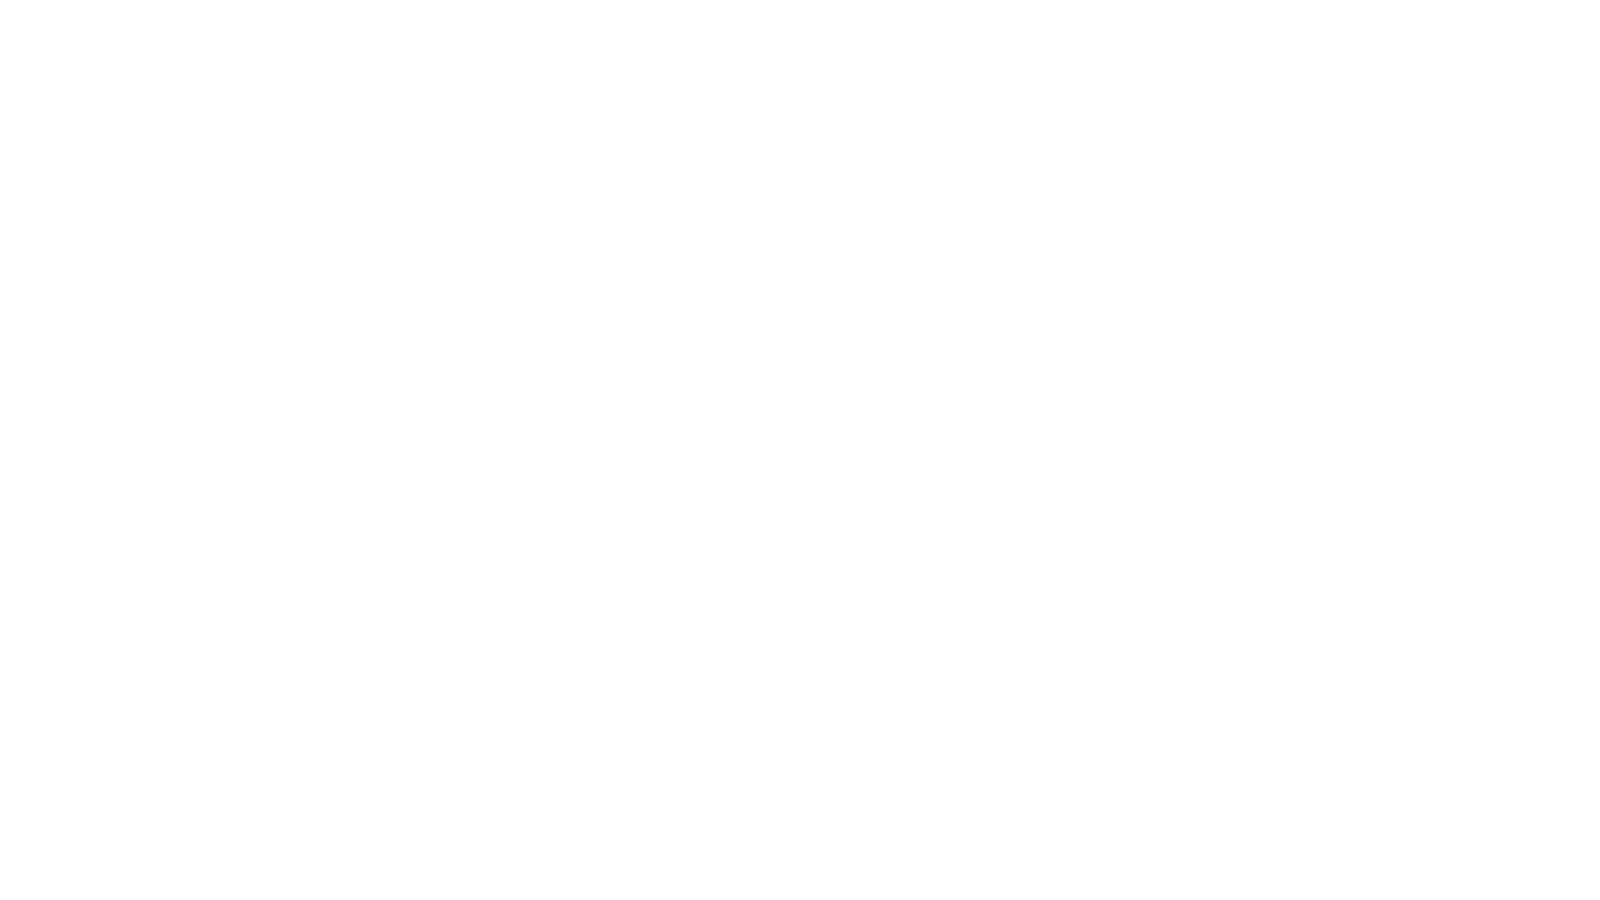 Diseño de mural para la columna de la entrada del auditorio Barradas de Hospitalet de Llobregat, situado en la Rambla Just Oliveras. 

En la parte de arriba esta Dalí y Lorca, en homenaje a la literatura, teatro y pintura, que son personajes vinculados al ateneíllo que creo el artista Rafael Barradas que da nombre al centro, en la parte central hay un retrato en mi estilo del mismo Barradas y una versión del caballo de juguete que es el logo del espacio, este acompañado de medusas en referencia al símbolo del Museo de la ciudad, antes de llegar a la tercera parte hay una versión a mi estilo de la estatua llamada acollidora que se encuentra cerca del auditorio, y en la tercera parte quería hacer una mención al cine y la música con un retrato de Buñuel y Bowie.

Todo ello realizado en colores que se acercan a la nueva imagen del espacio y sus nuevos colores corporativos, que son el gris marengo y burdeos. 

#streetart #streetarteverywhere #art #streetartistry #streetartist #wallart #instagraffiti #sprayart #urbanwalls #designt #kawaii#streetartglobe #streetarts #streetartandgraffiti #arteurbano #streetartwork #doodles

instagram: https://www.instagram.com/garbikw/
Web: http://garbikw.com
https://www.facebook.com/garbi.kw/
pinterest: https://www.pinterest.es/garbikw